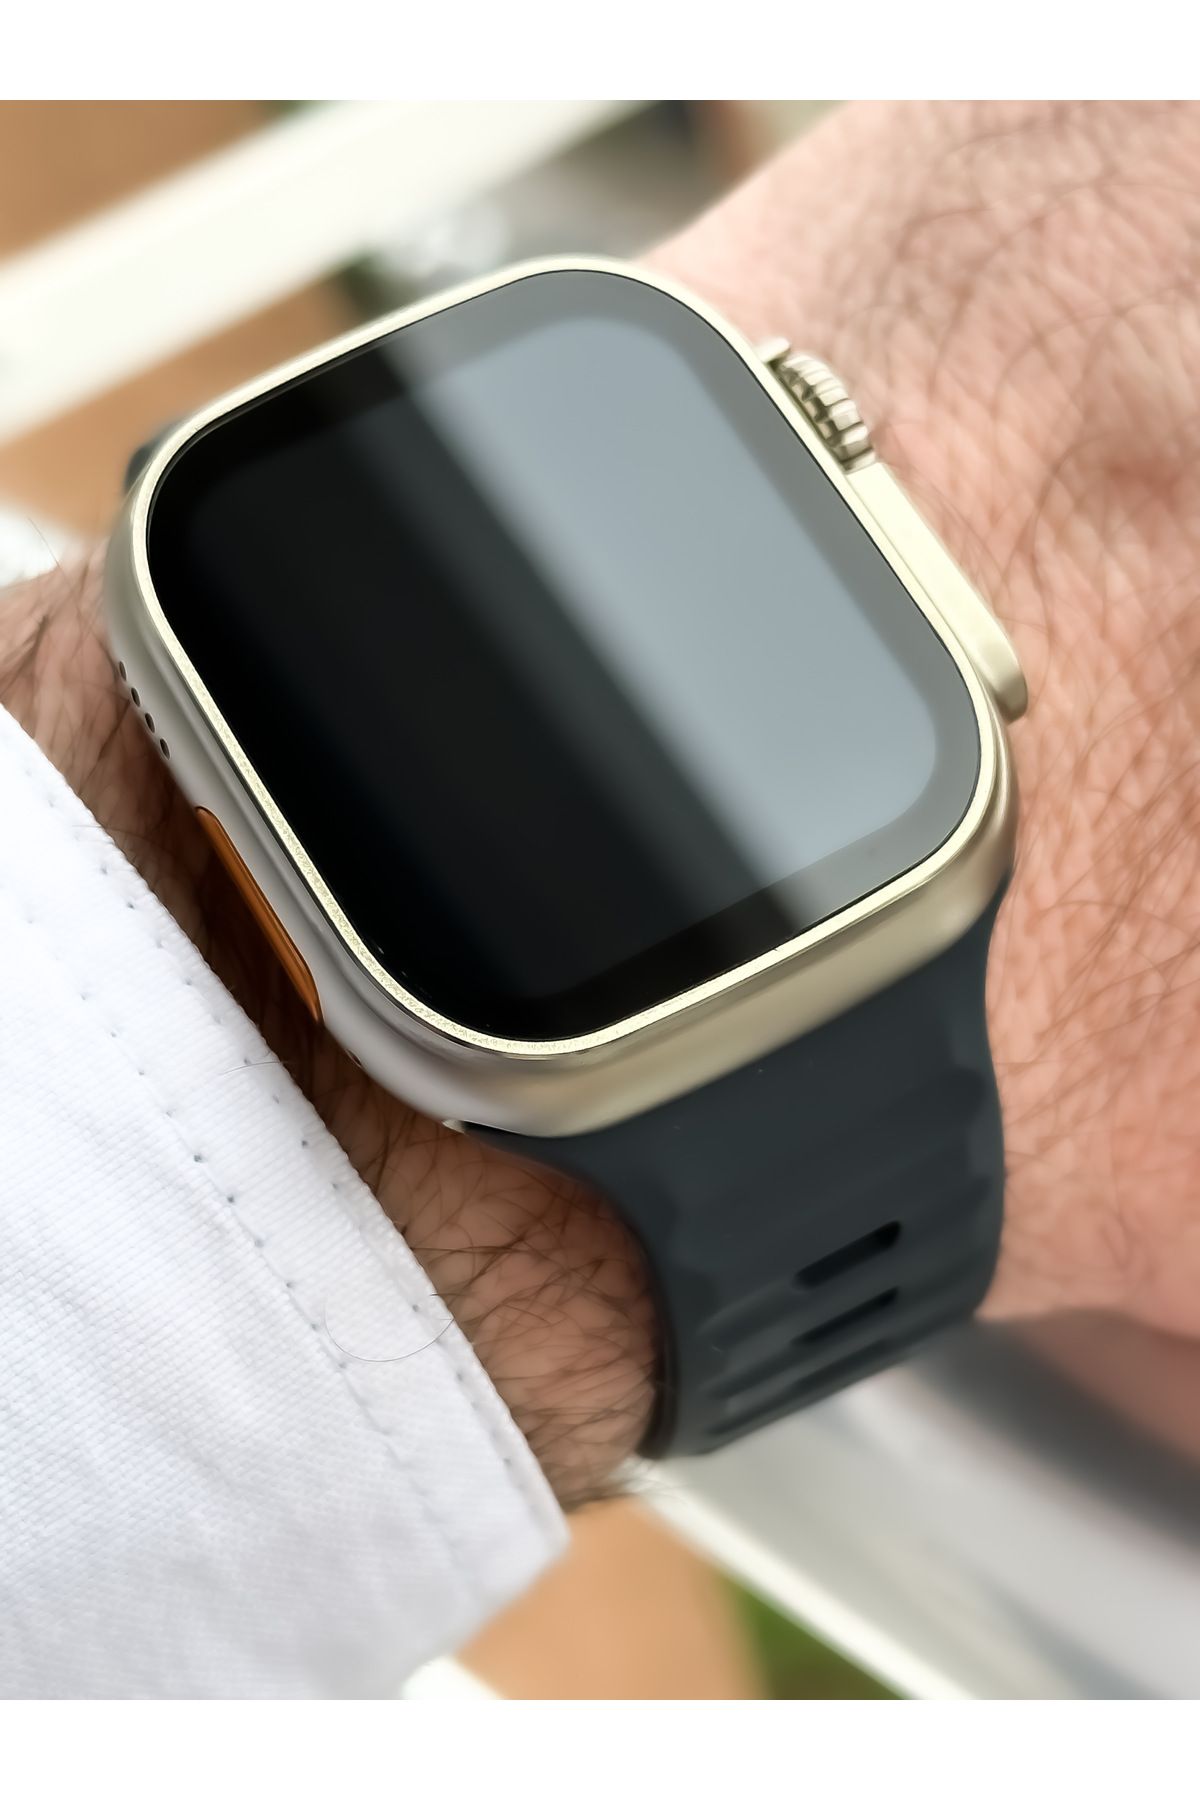 FERRO Füme Silikon Kordon,sesli Görüşme,garantili, Watch Akıllı Saat Bileklik